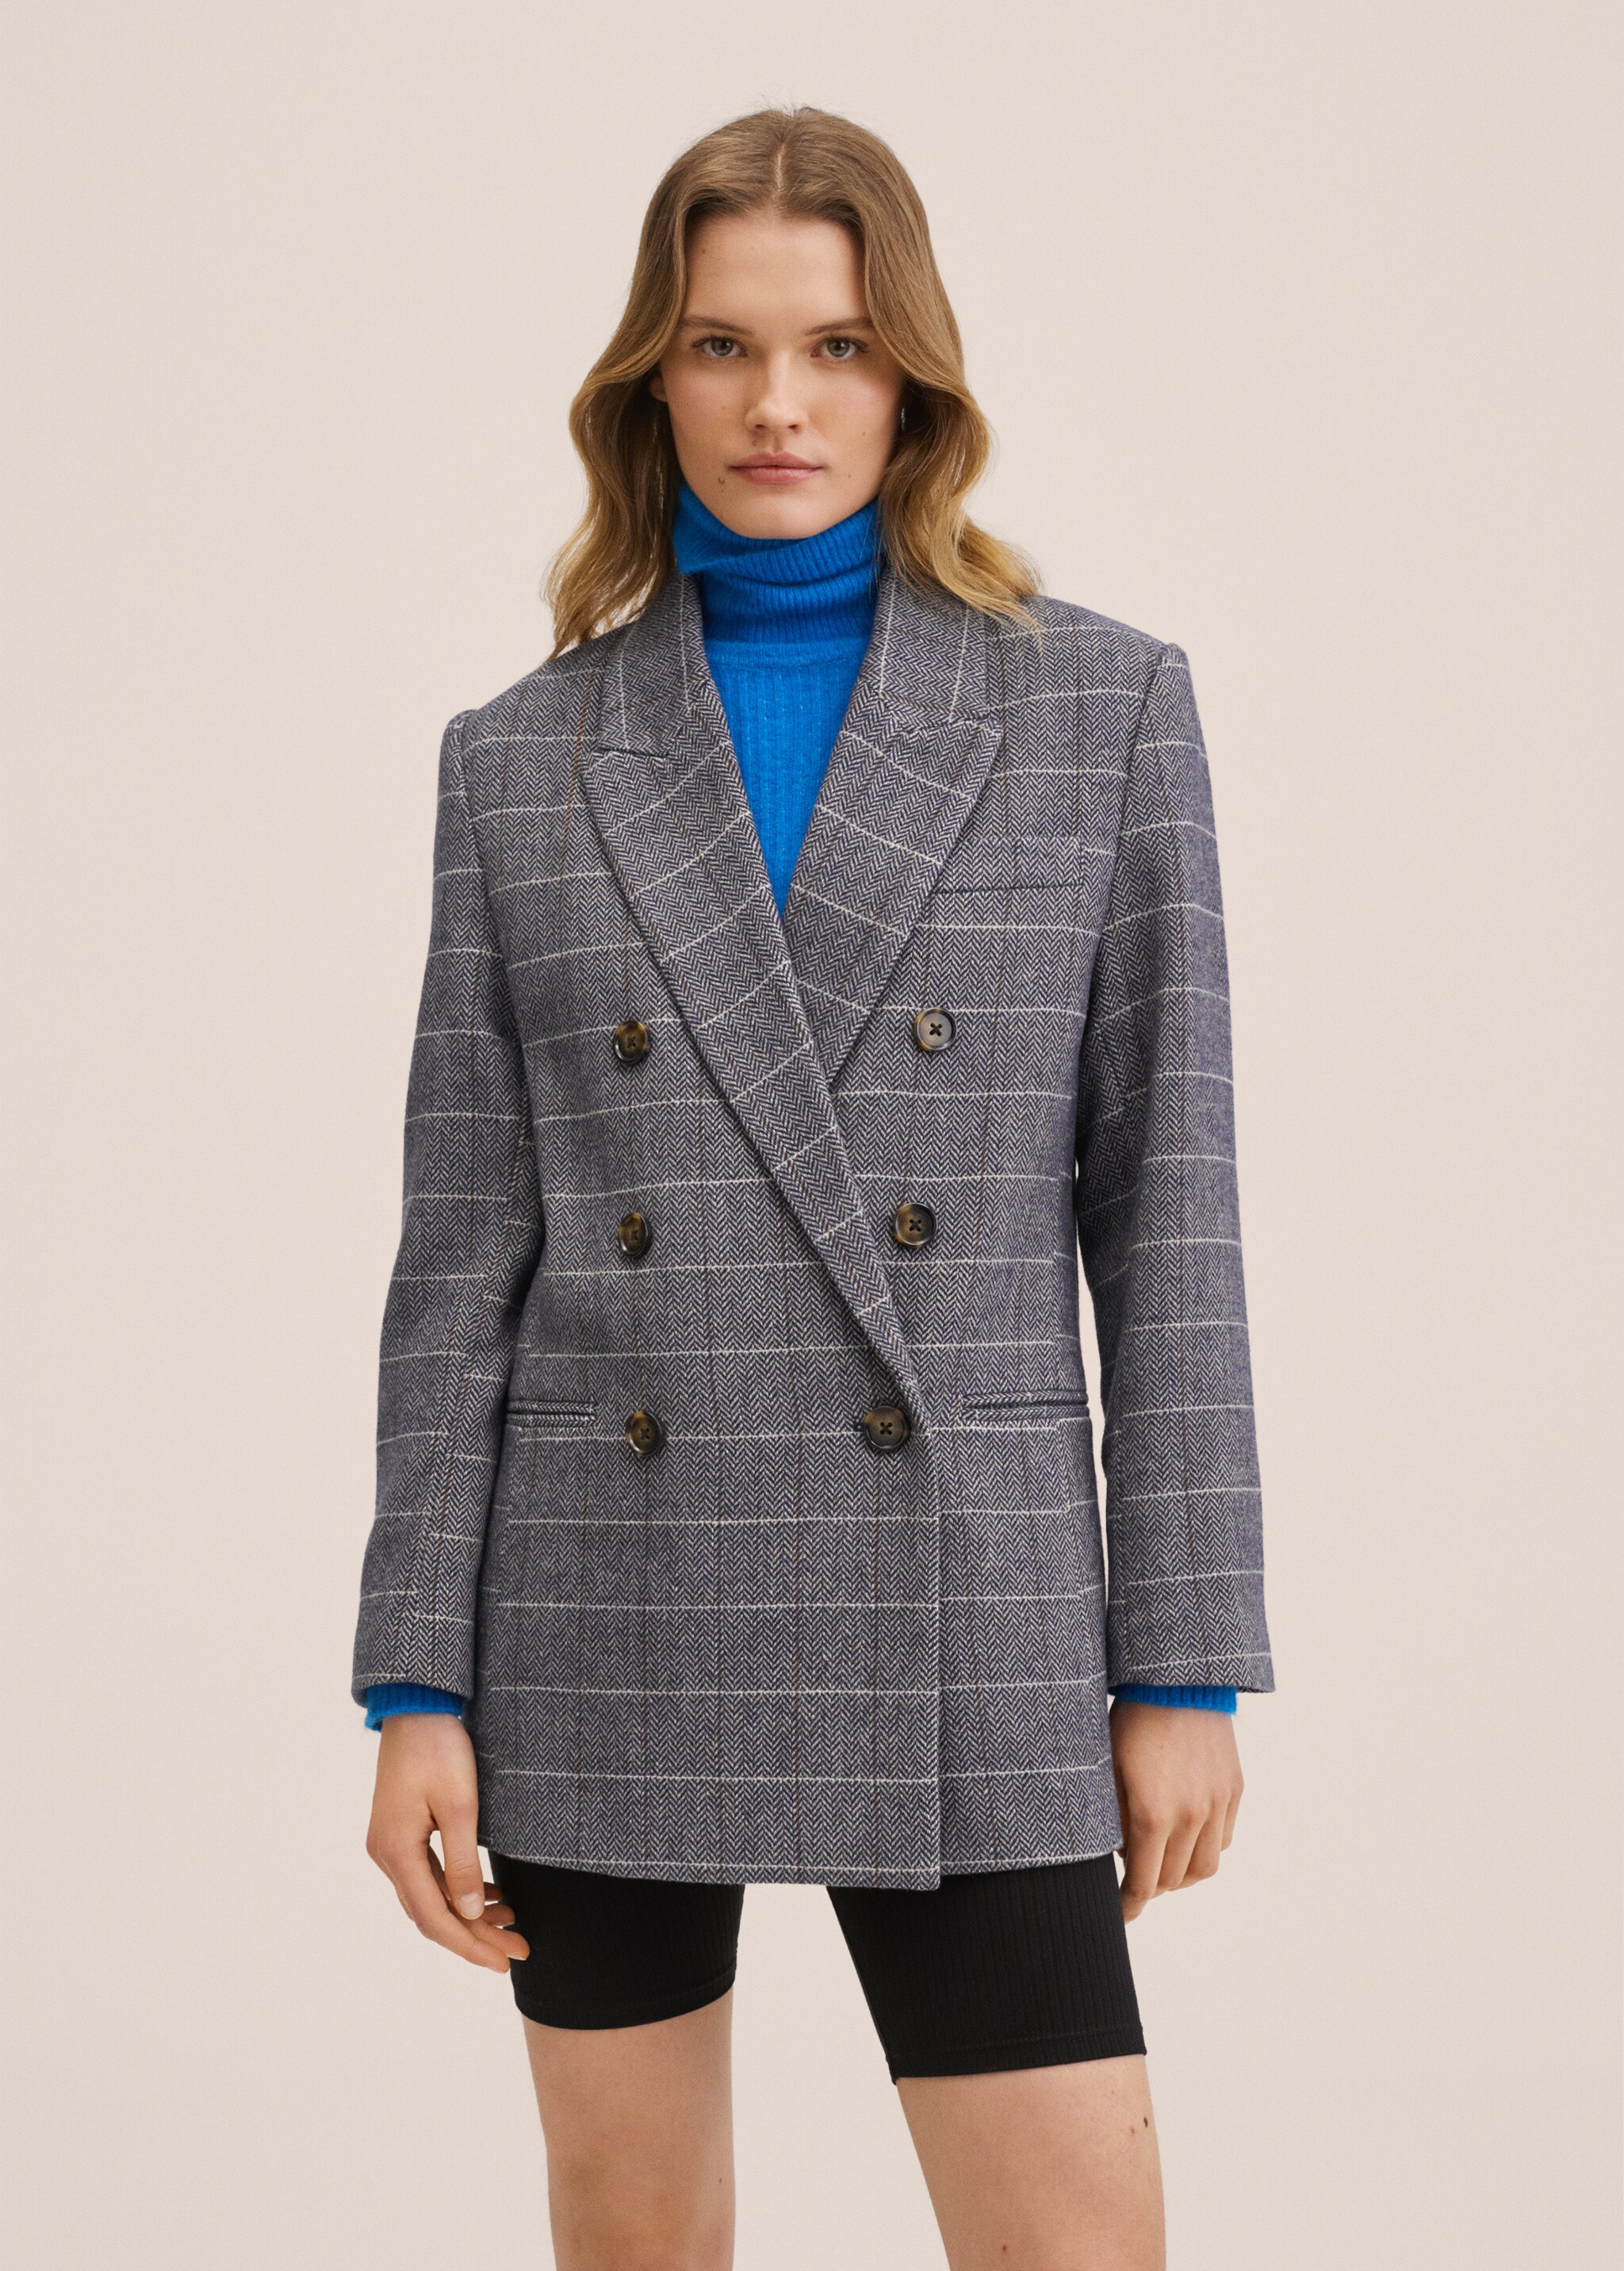 Oversized woollen suit jacket - Medium plane